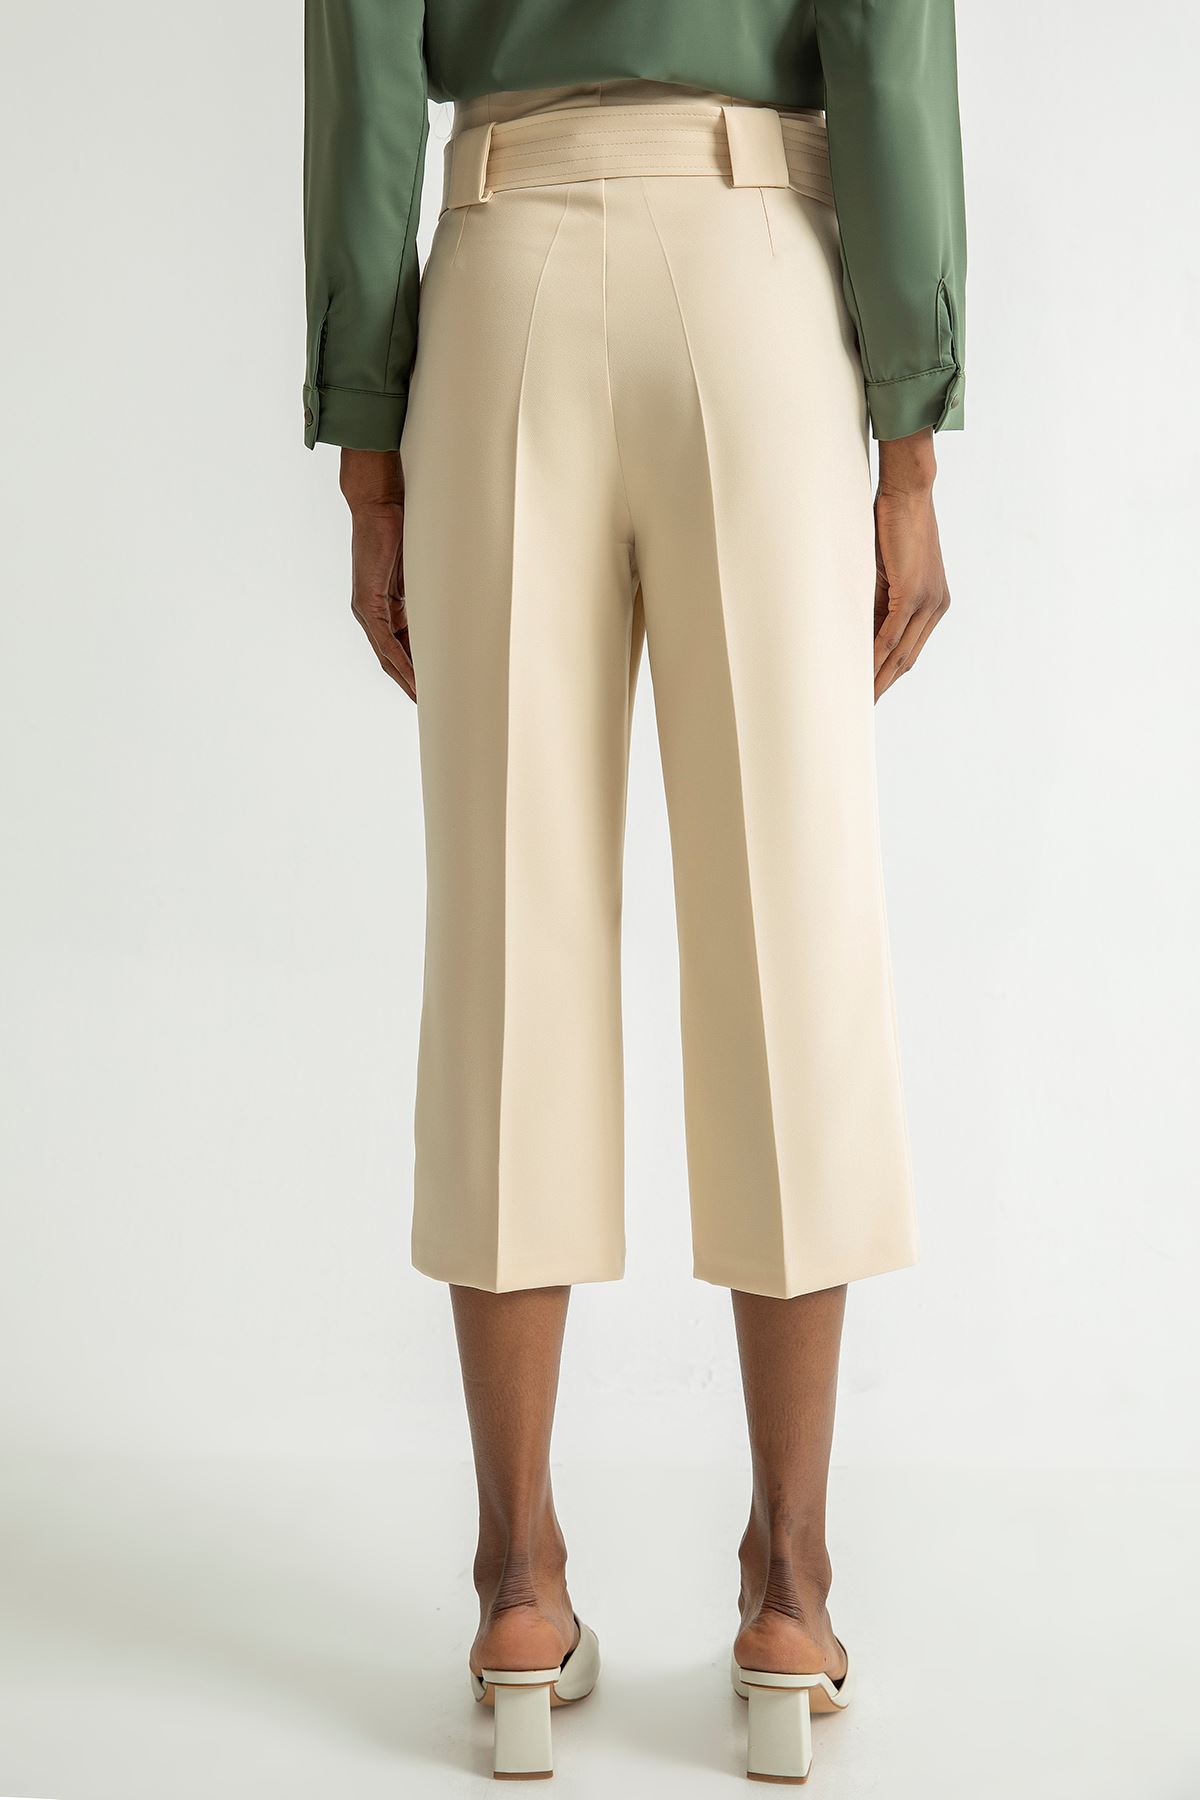 Atlas Fabric 3/4 Short Wide Wide Leg Women'S Trouser - Stone